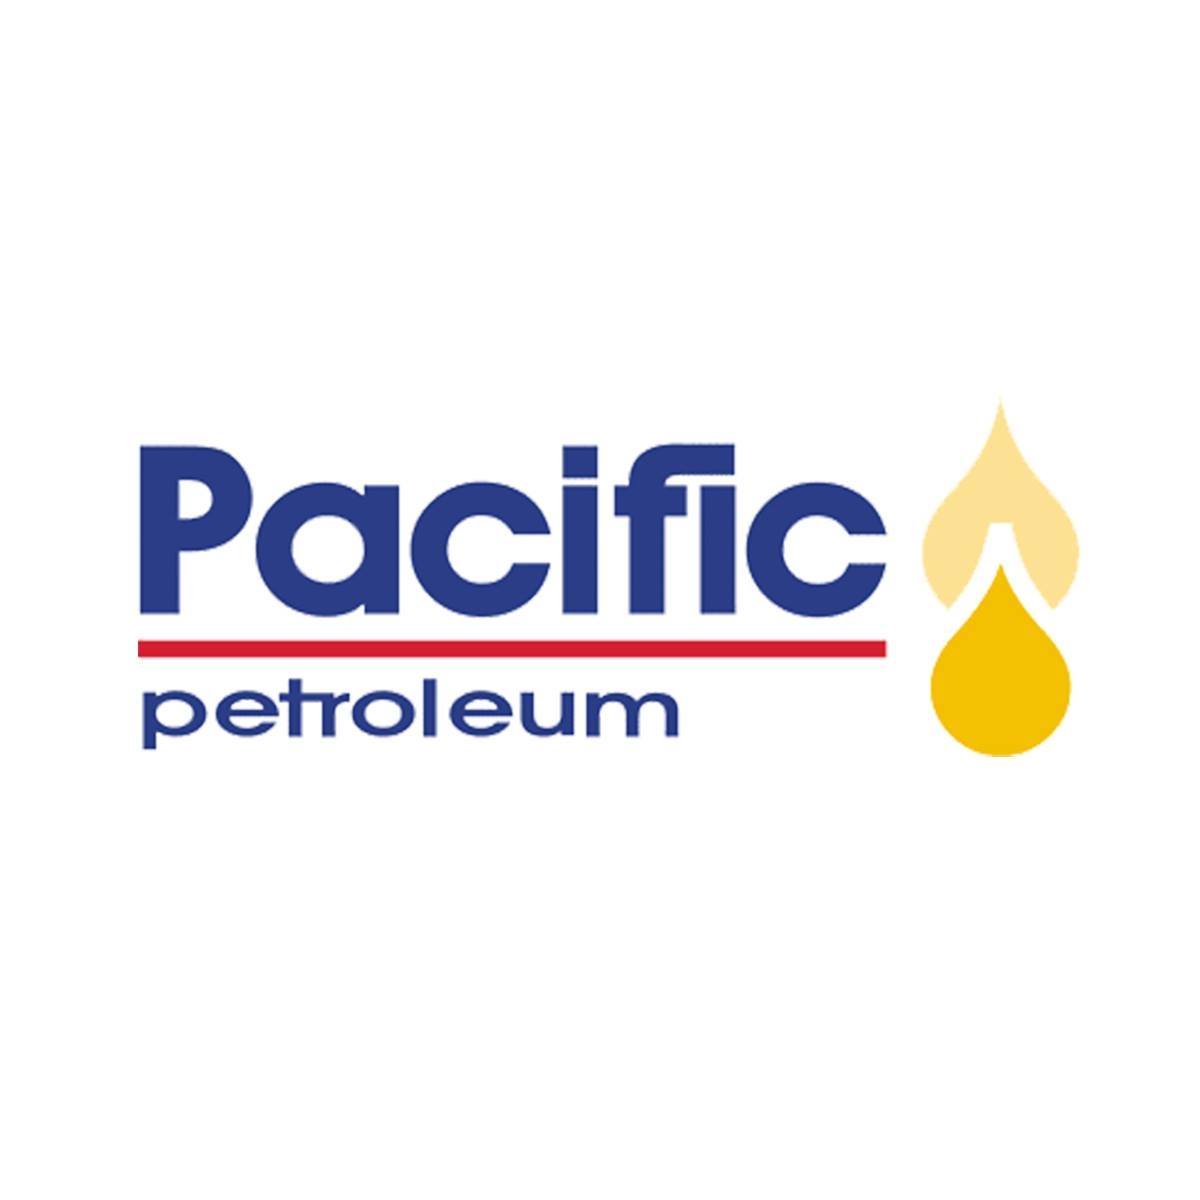 Pacific Petroleum